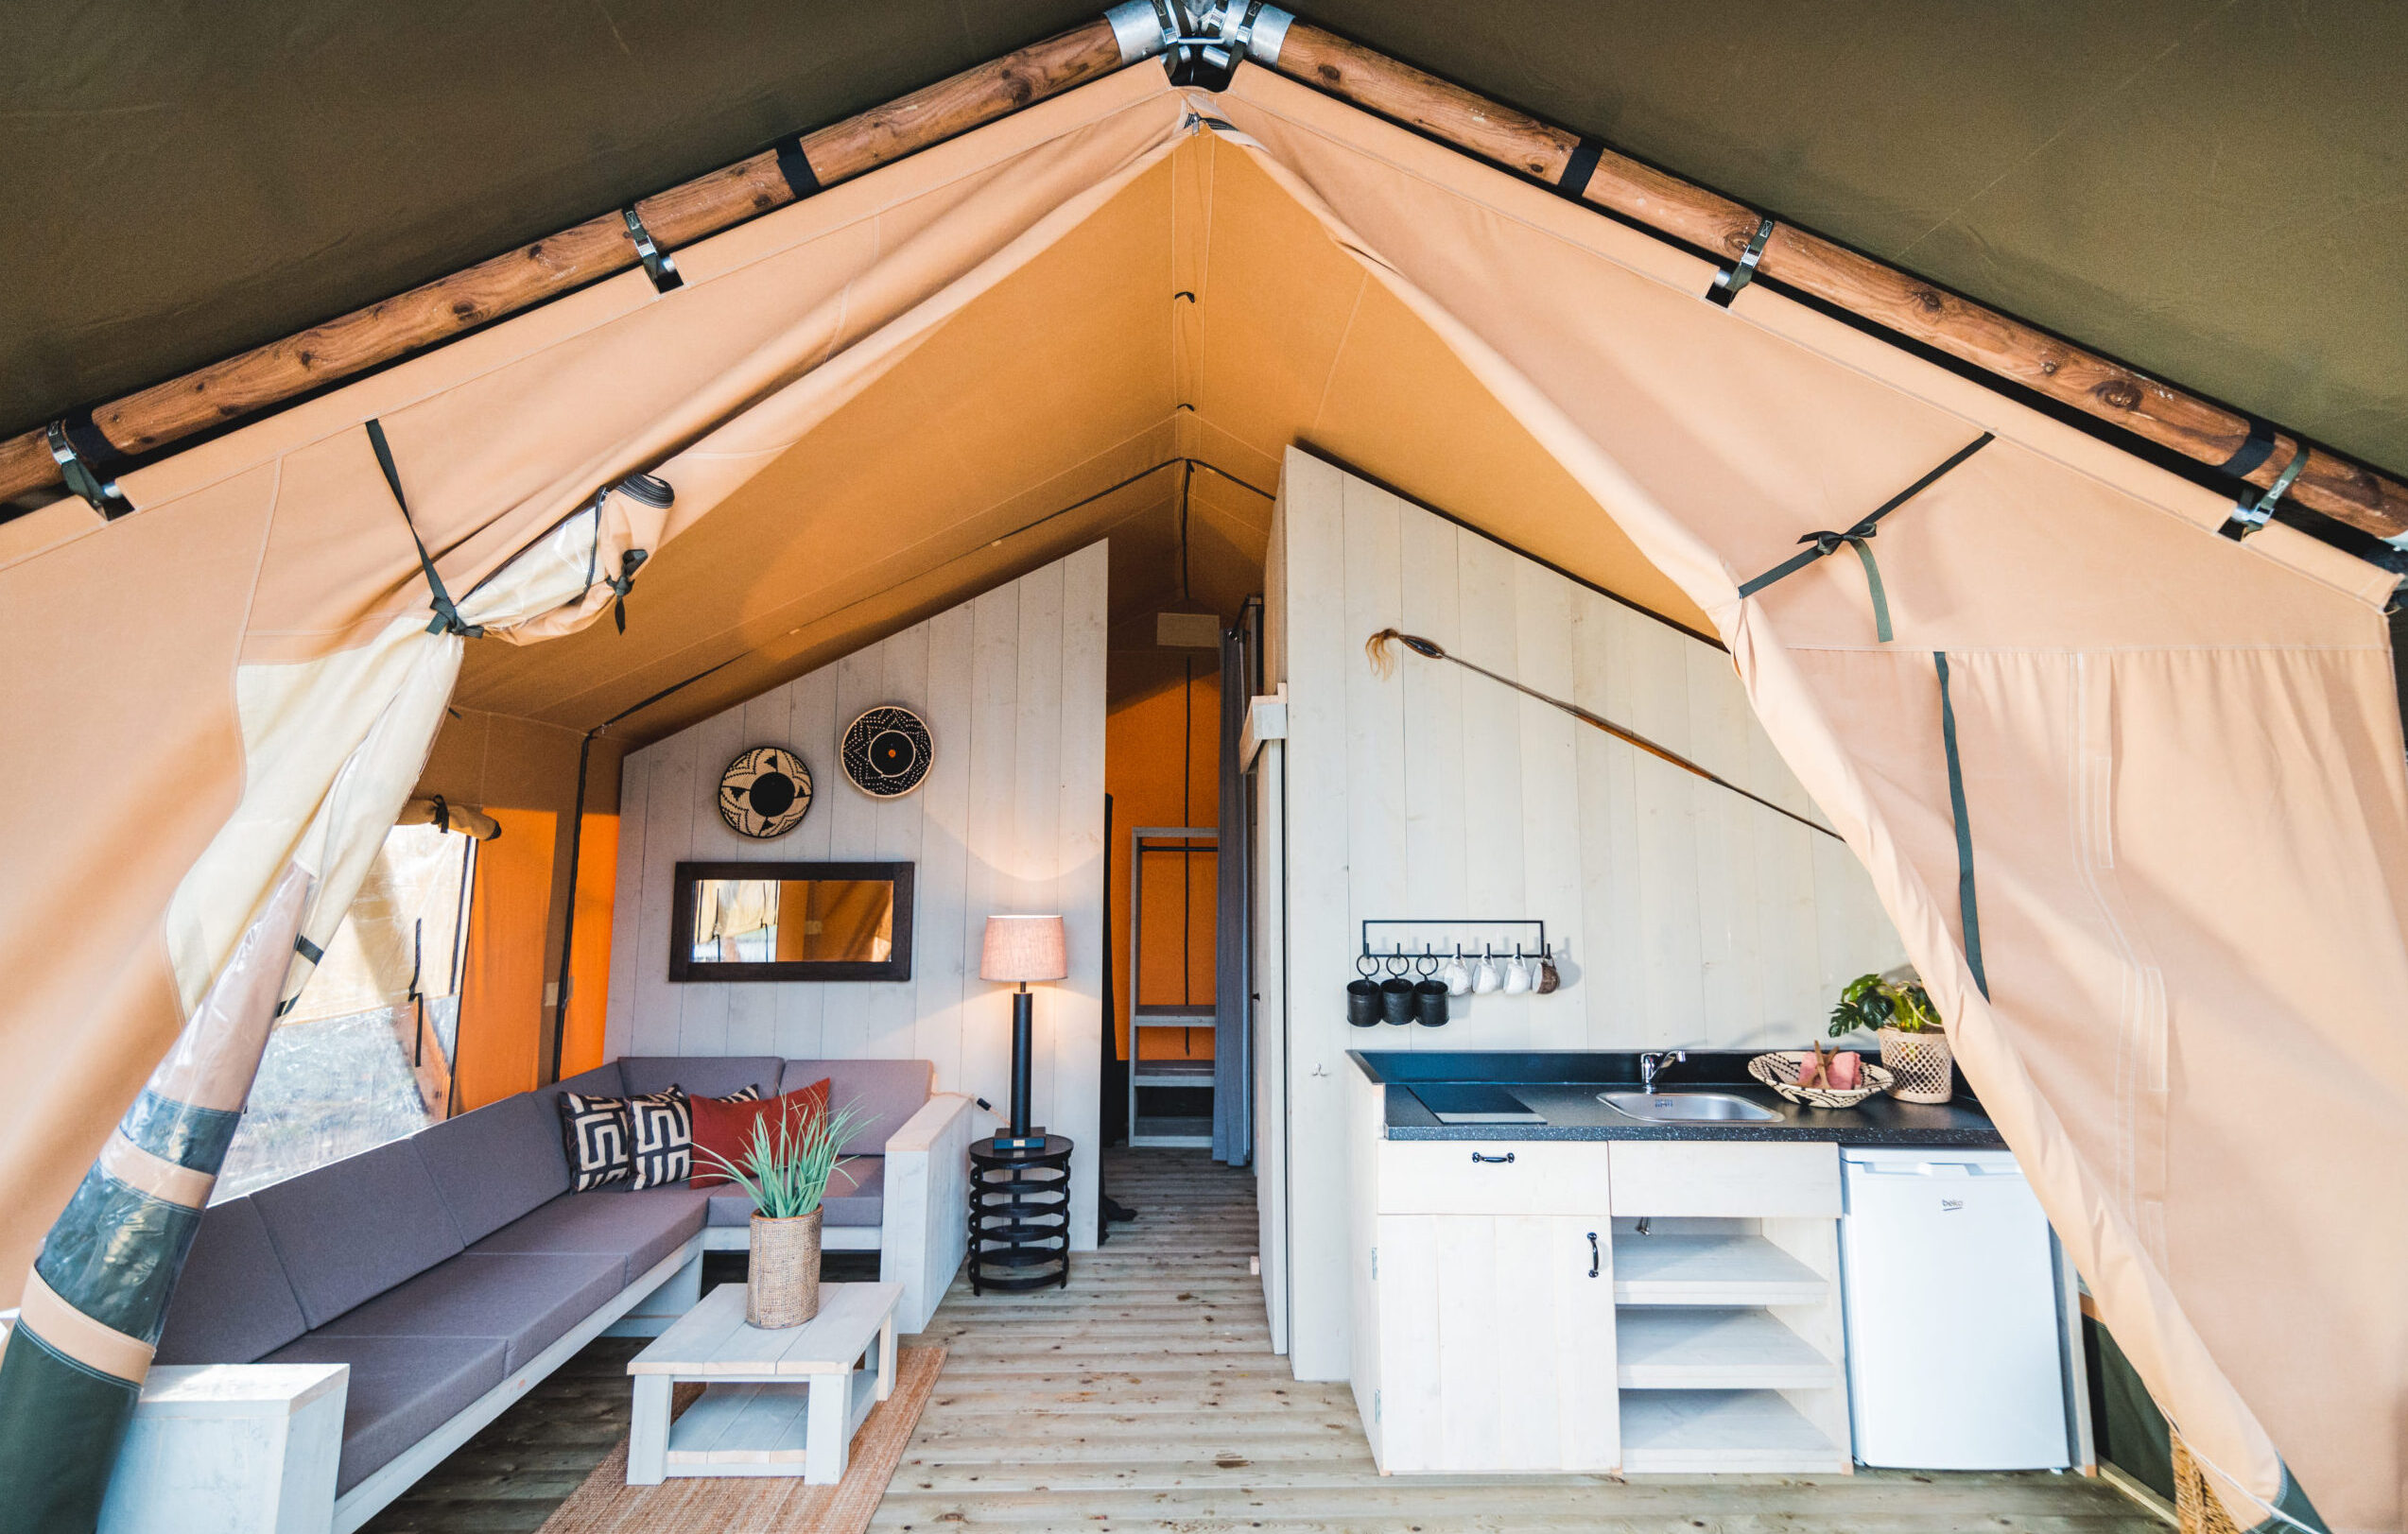 Suggerimenti e ispirazione per lo stile della vostra tenda safari